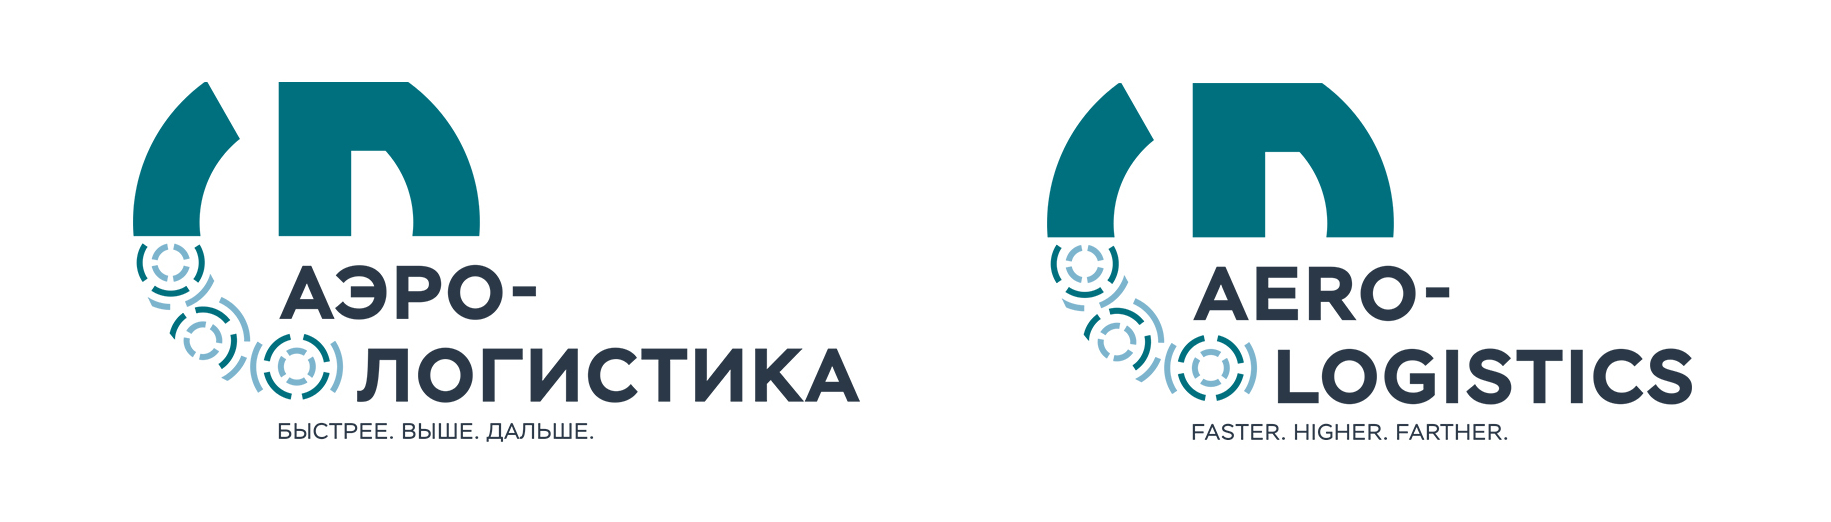 Логотип и знак конкурса в русской и английской версии